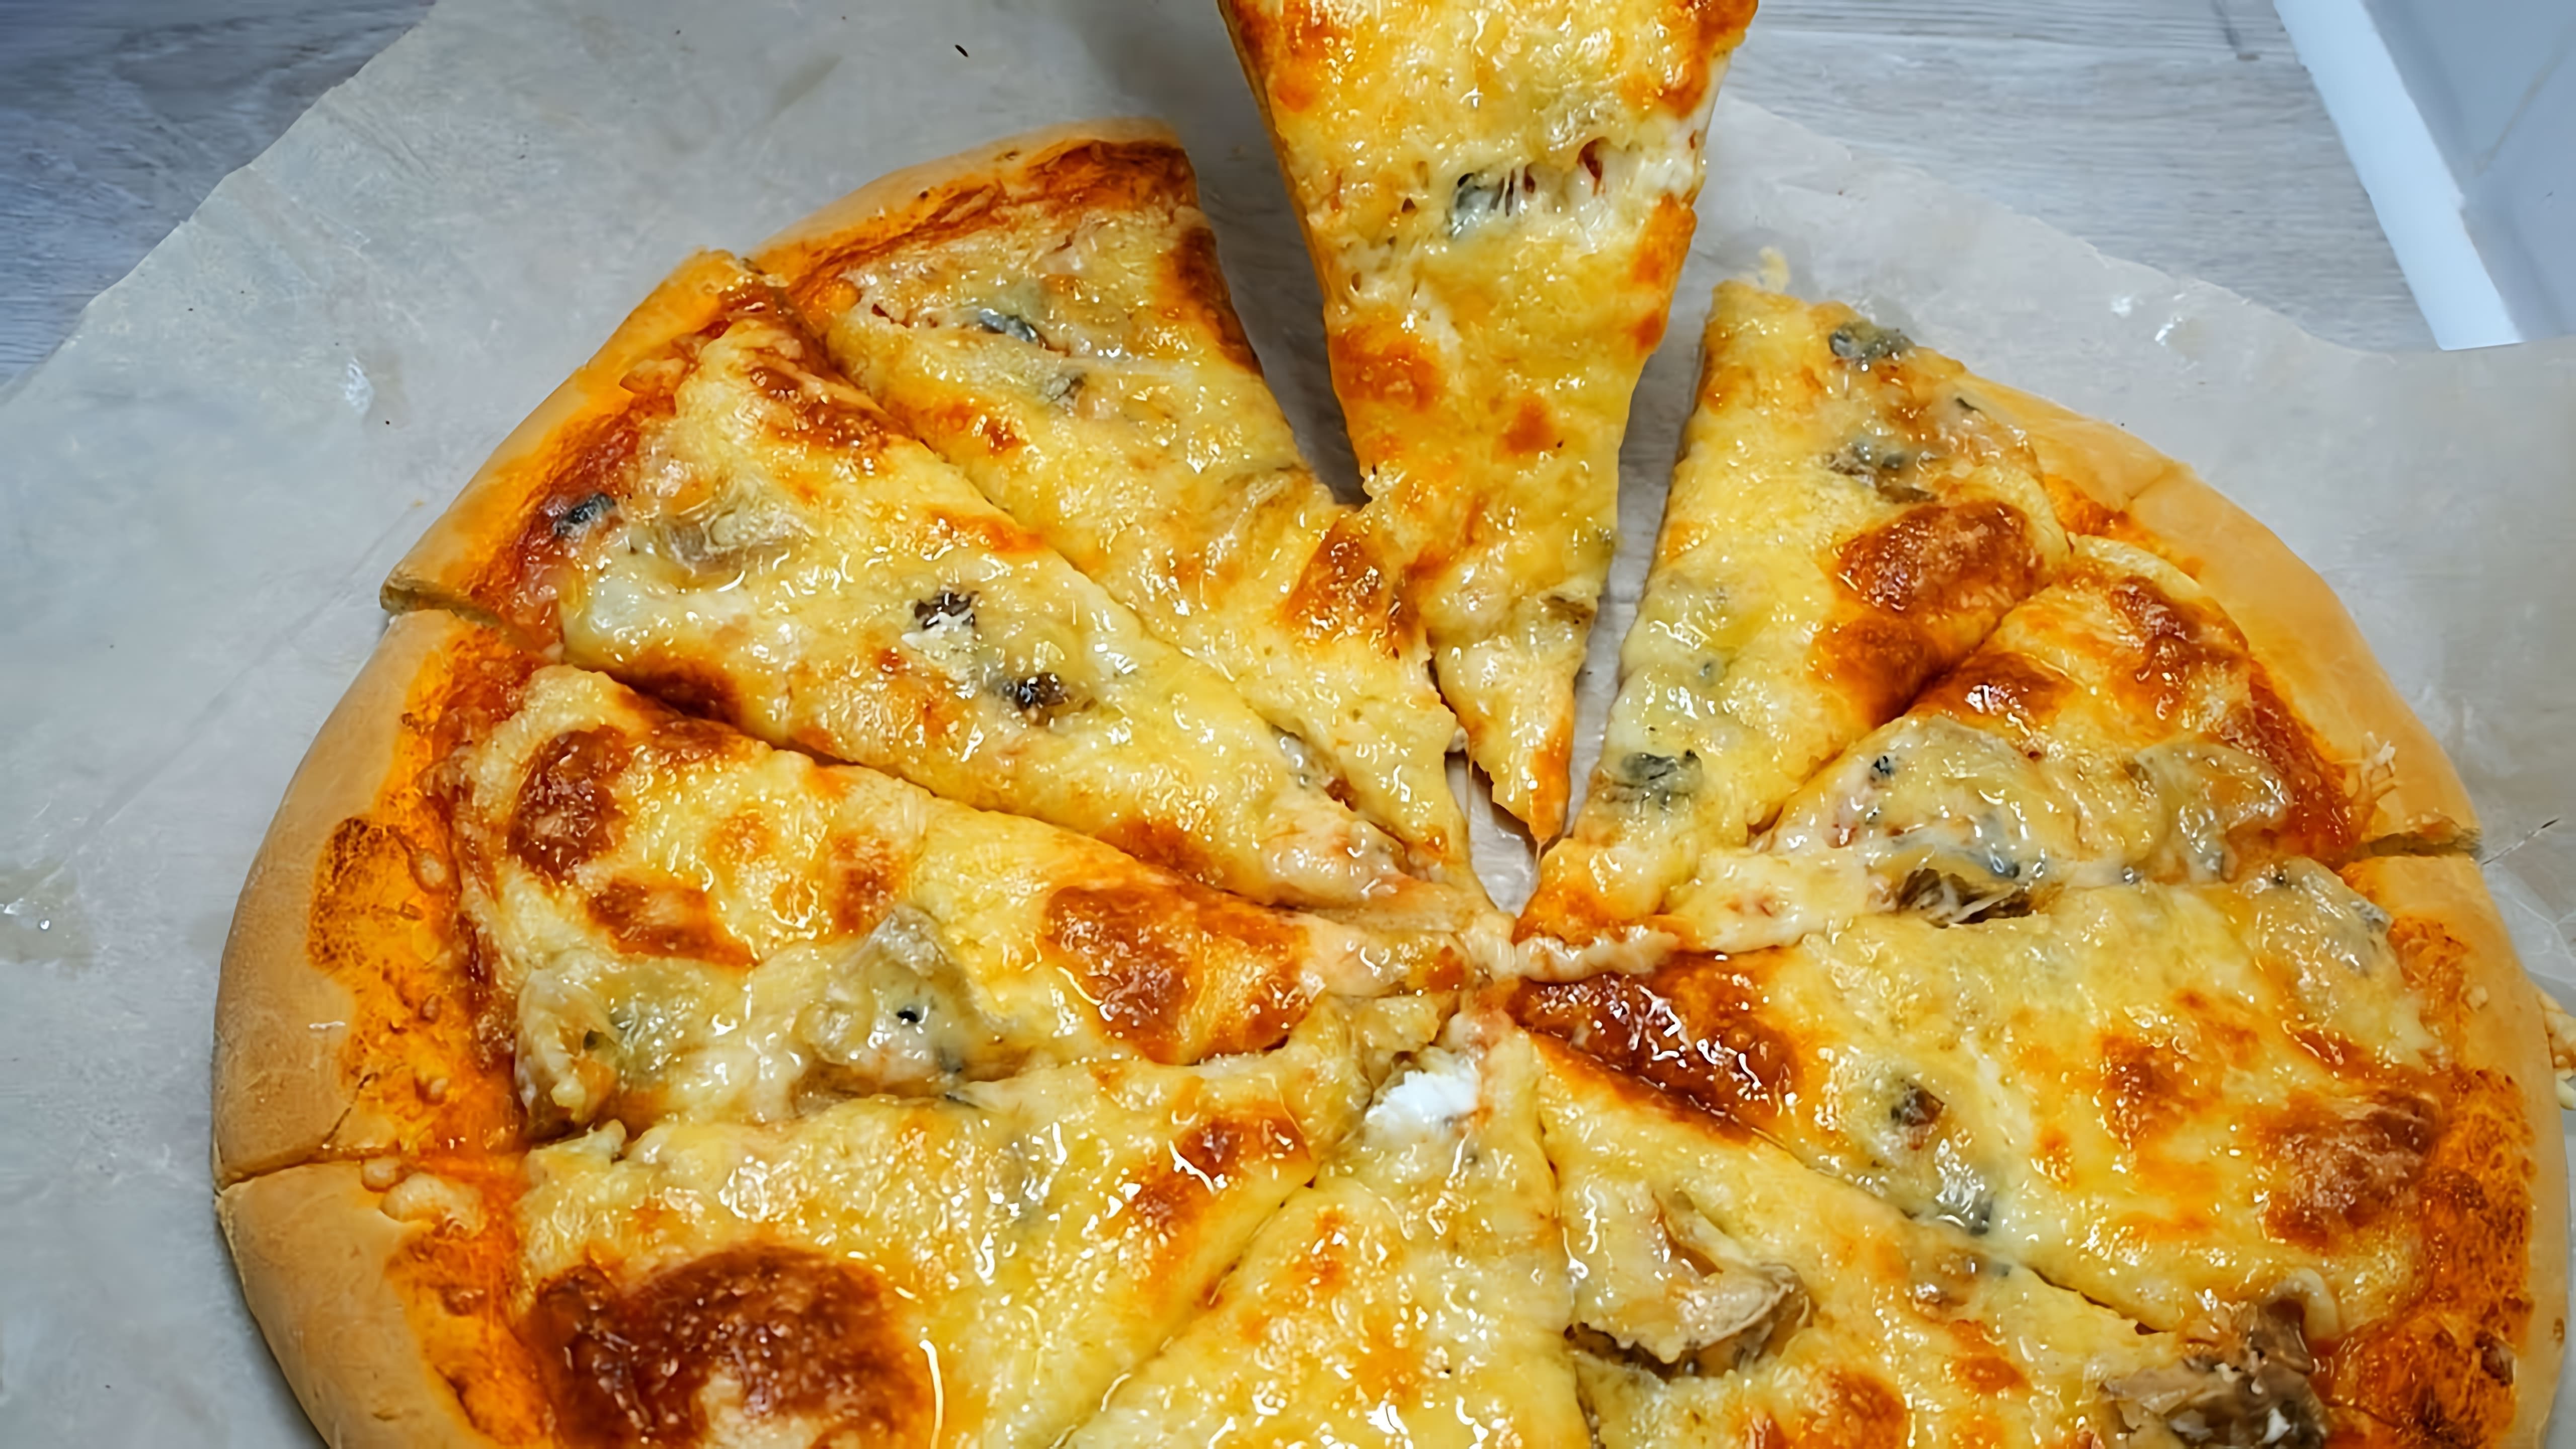 В этом видео демонстрируется рецепт приготовления пиццы "4 сыра" на тонком тесте